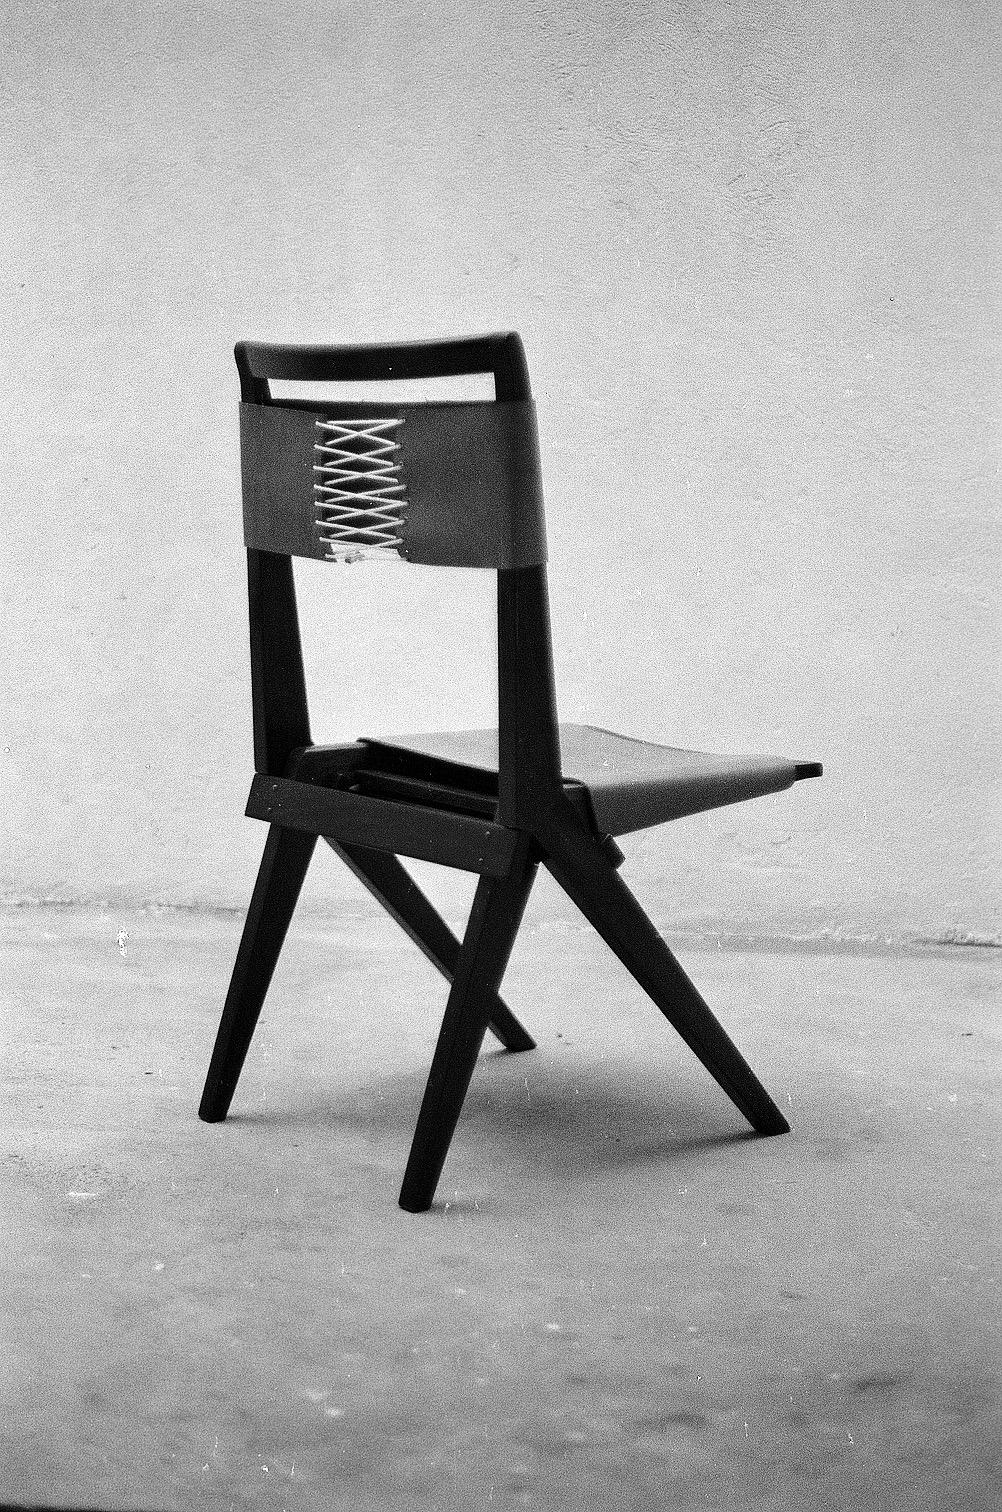 masp chair